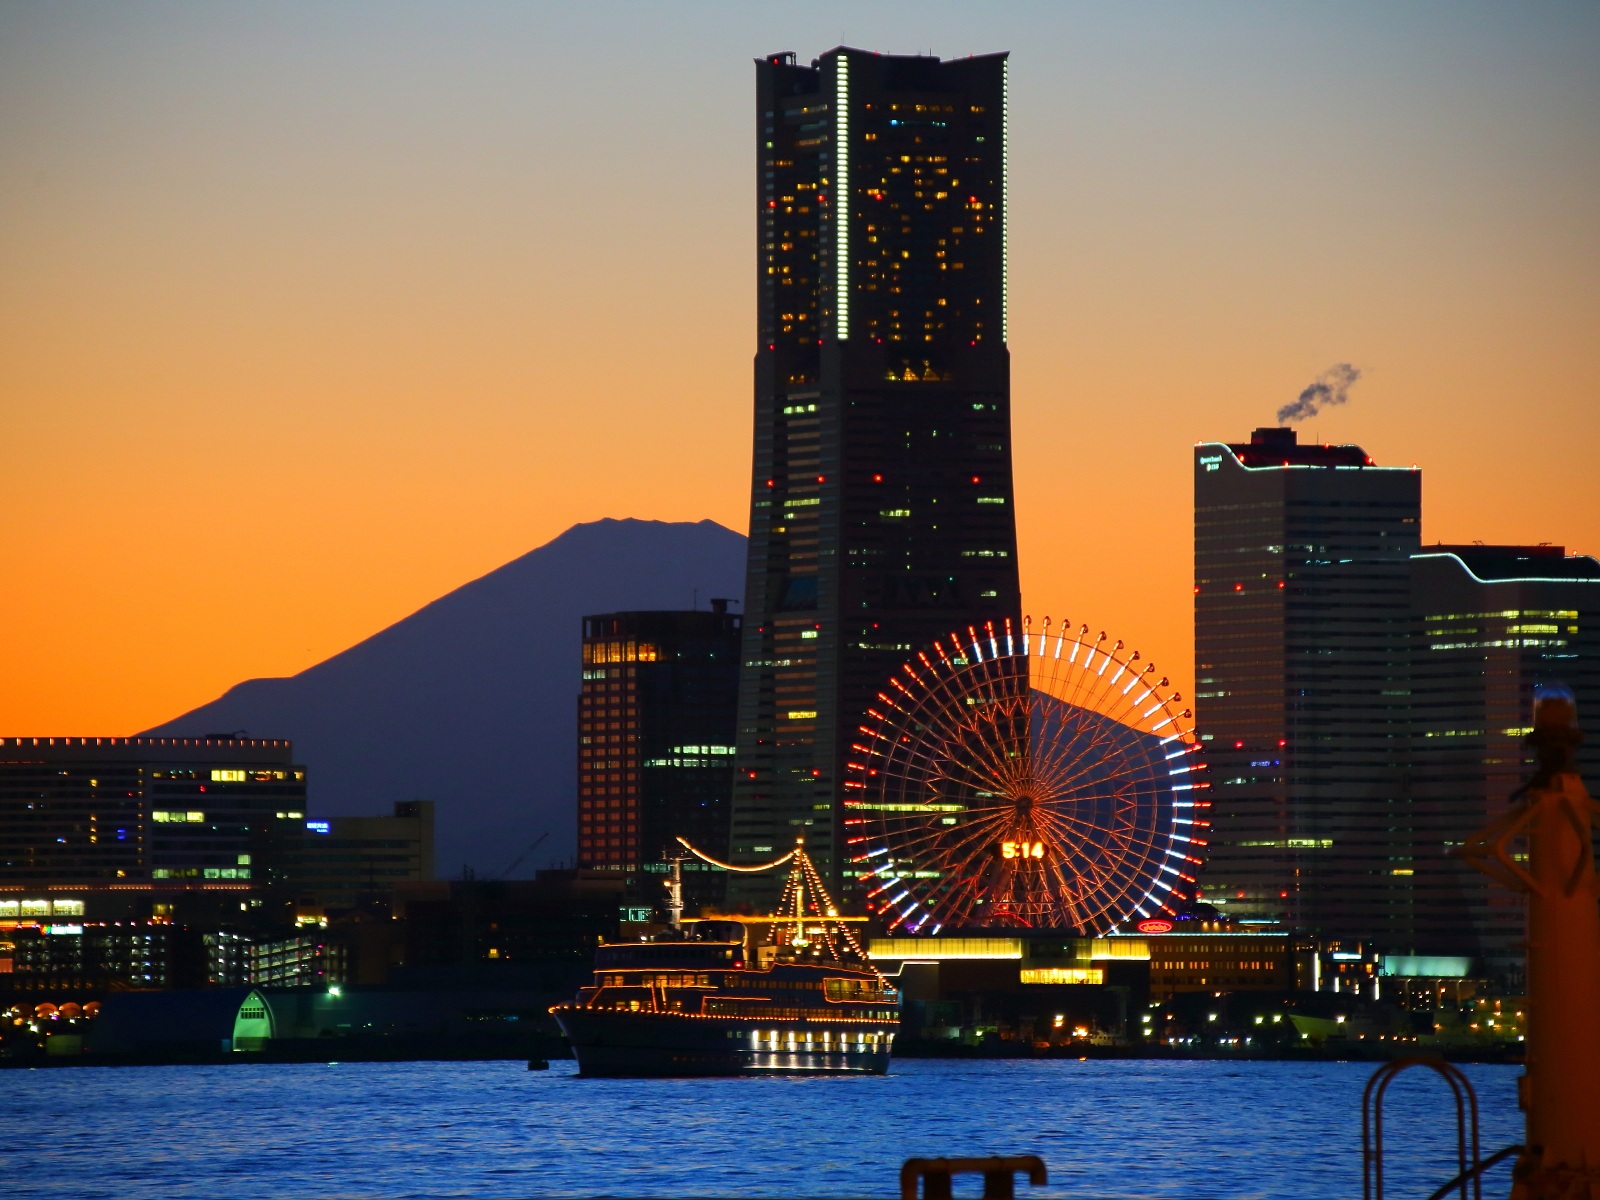 横浜の夕景 大黒ふ頭から見たみなとみらいと富士山の夕景写真 東京写真館